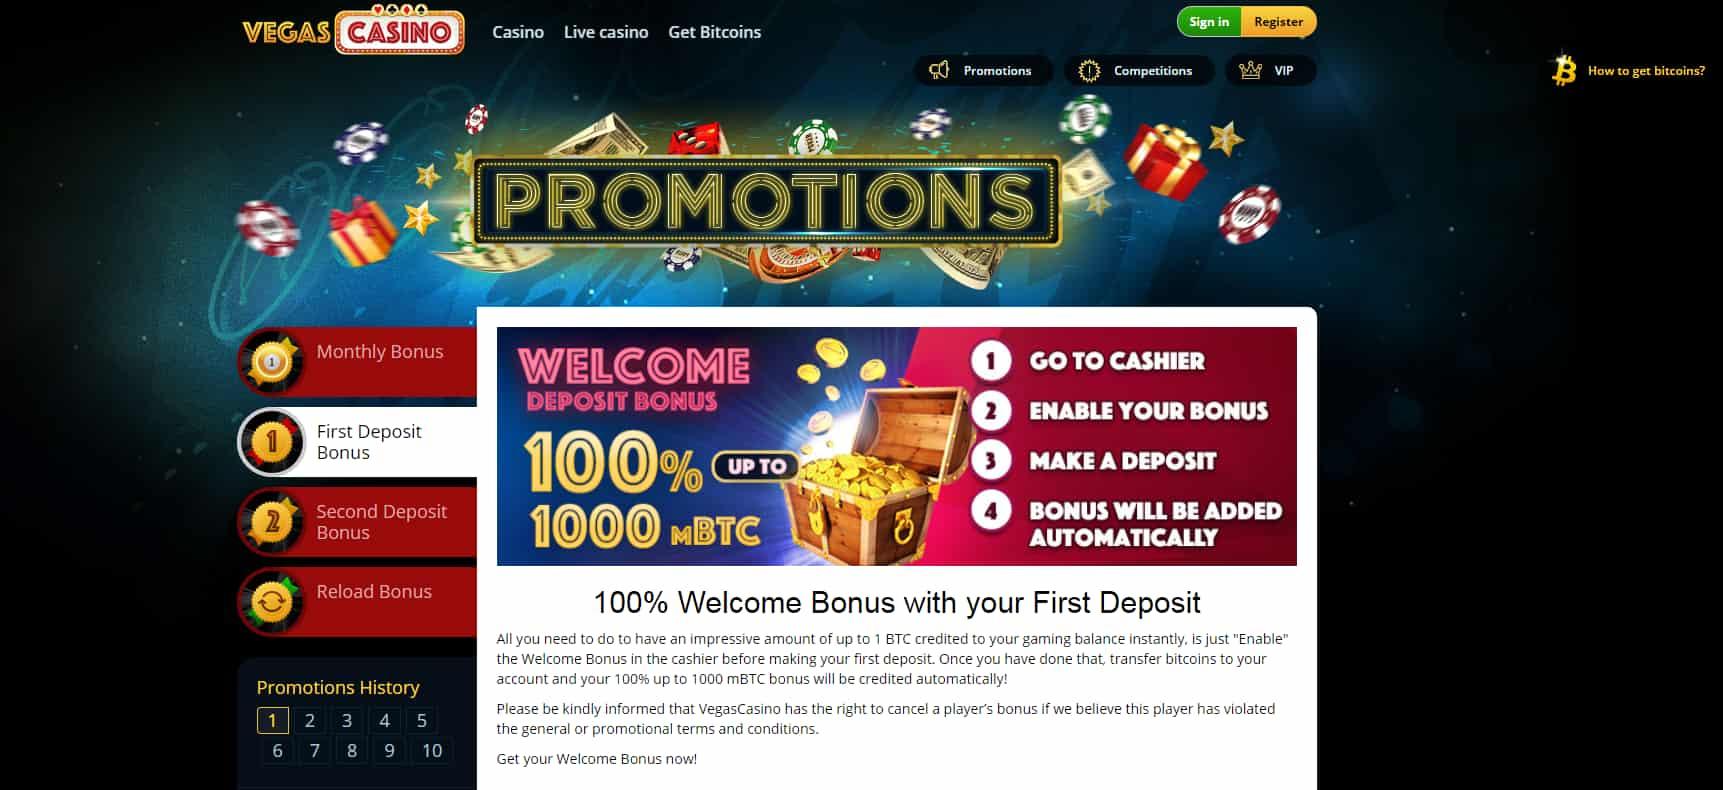 Vegas casino homepage